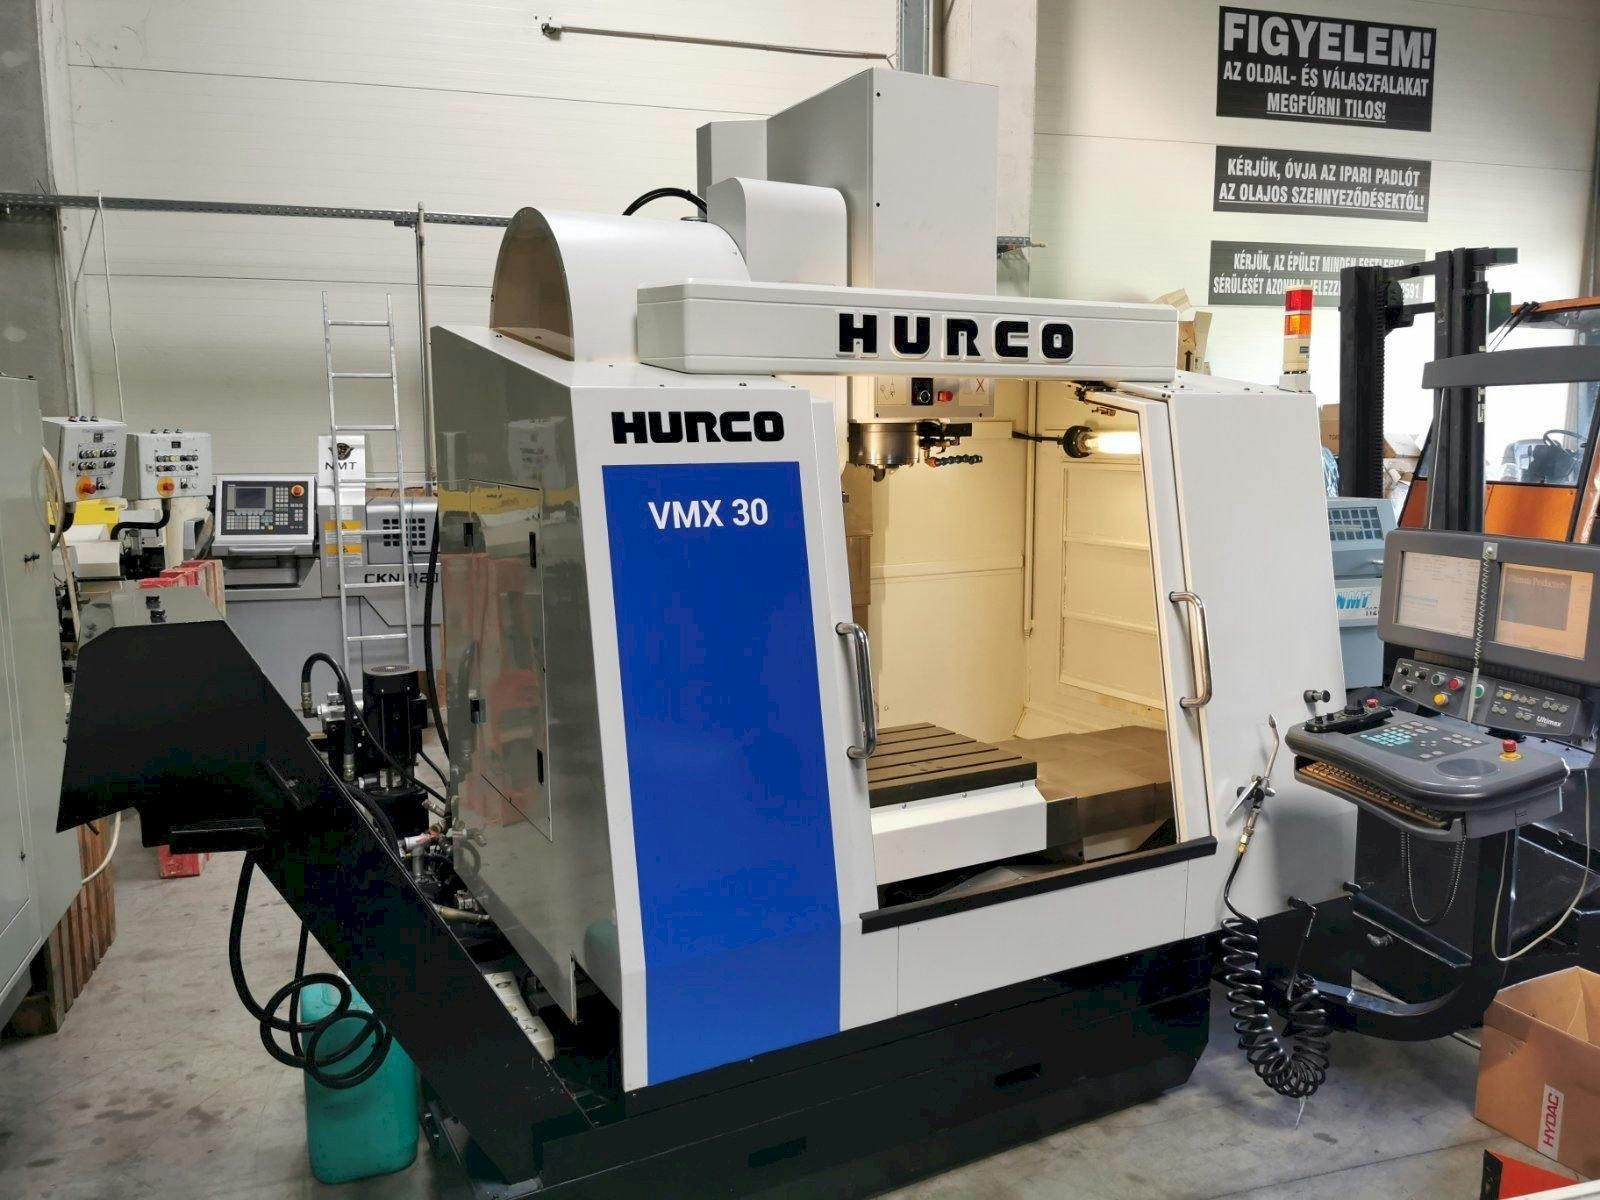 Vooraanzicht  van Hurco VMX30  machine